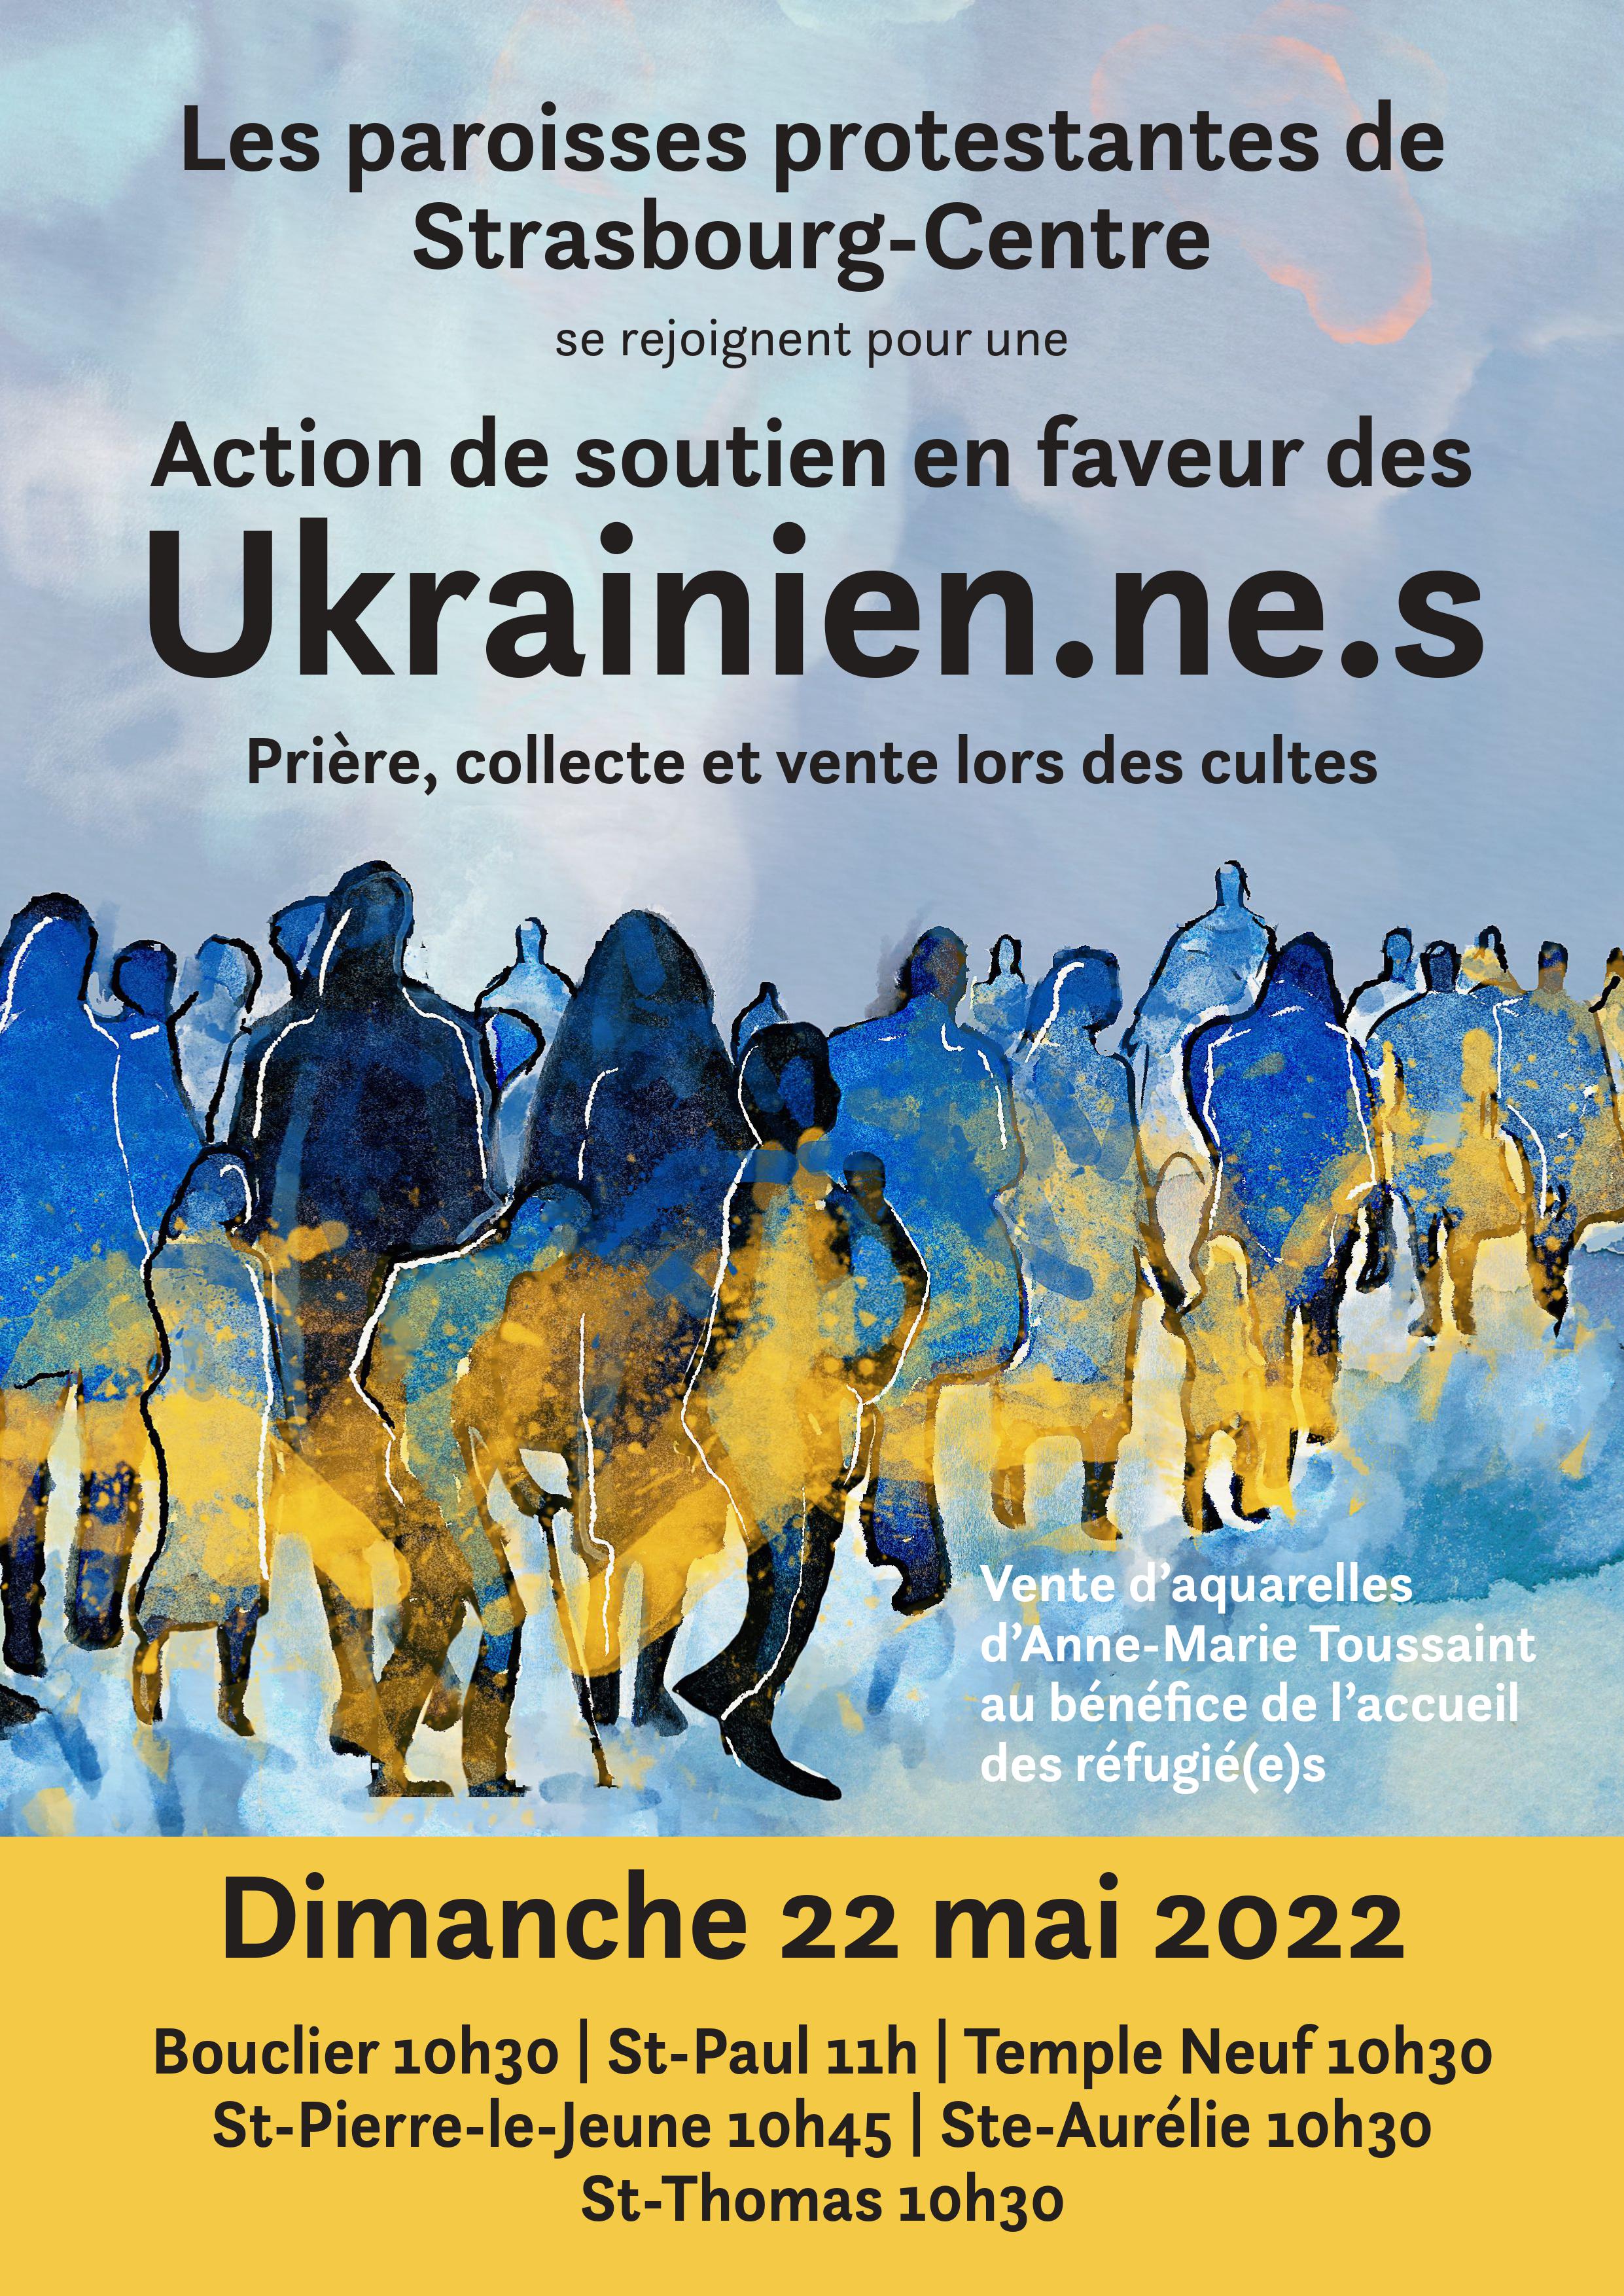 Action des paroisses protestantes de Strasbourg-centre pour l'Ukraine